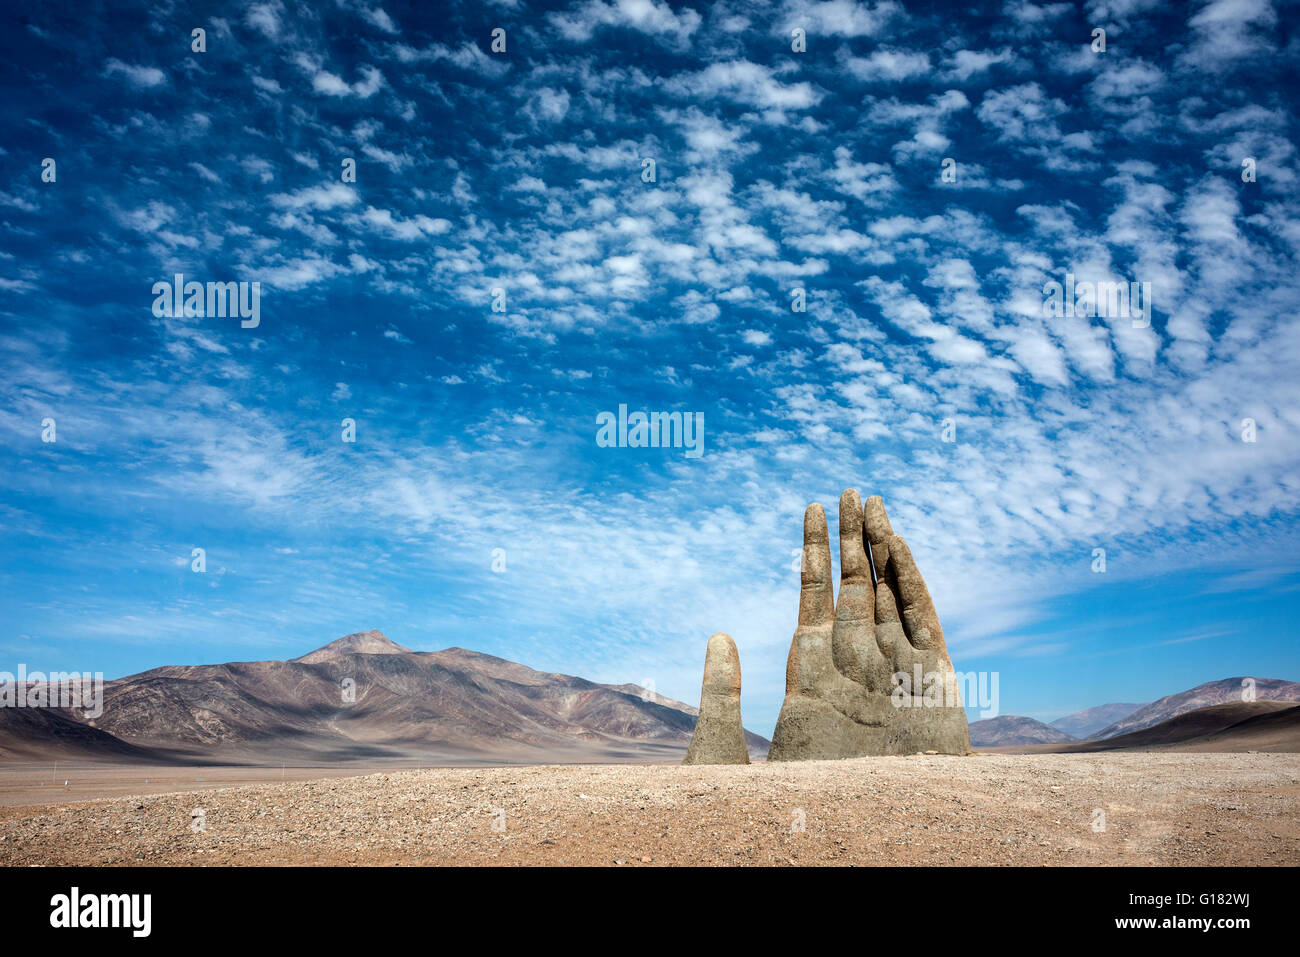 ANTOFAGASTA, 6 avril : pluies dans le désert d'Atacama lavé graffiti de la sculpture Main de désert (Mano de Desierto) Apri Banque D'Images